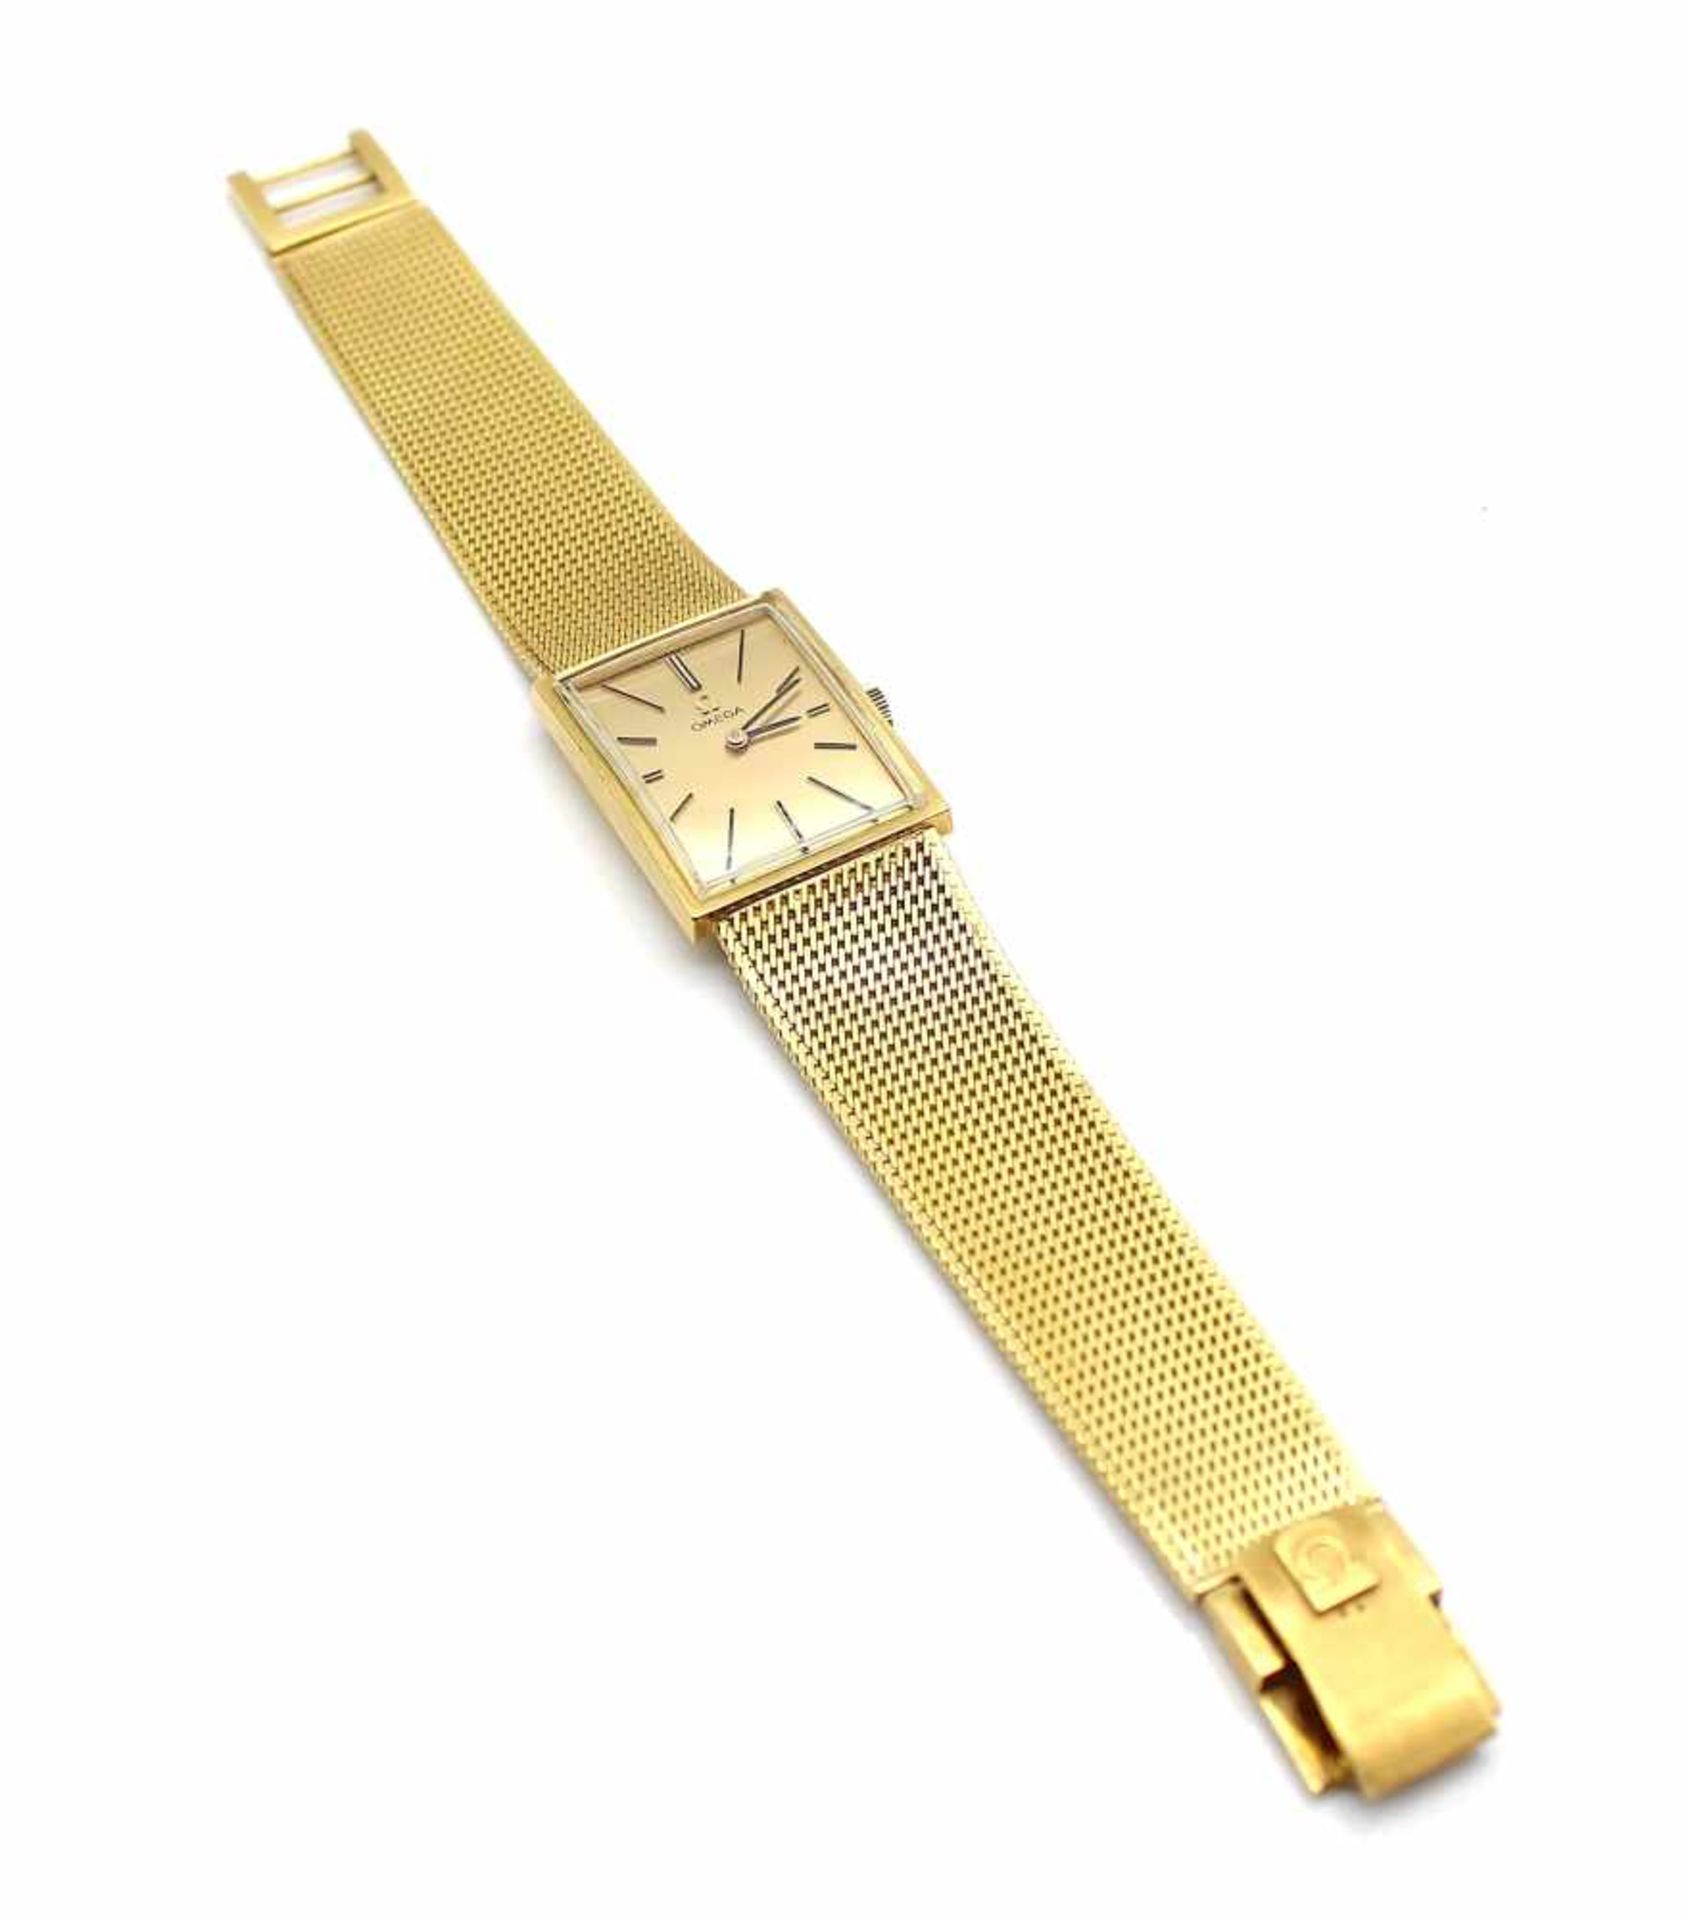 Armbanduhr Omega aus 750er Gold im Omega Etui. Die Uhr ist gangbar. Eine Revision wird empfohlen. - Image 4 of 4